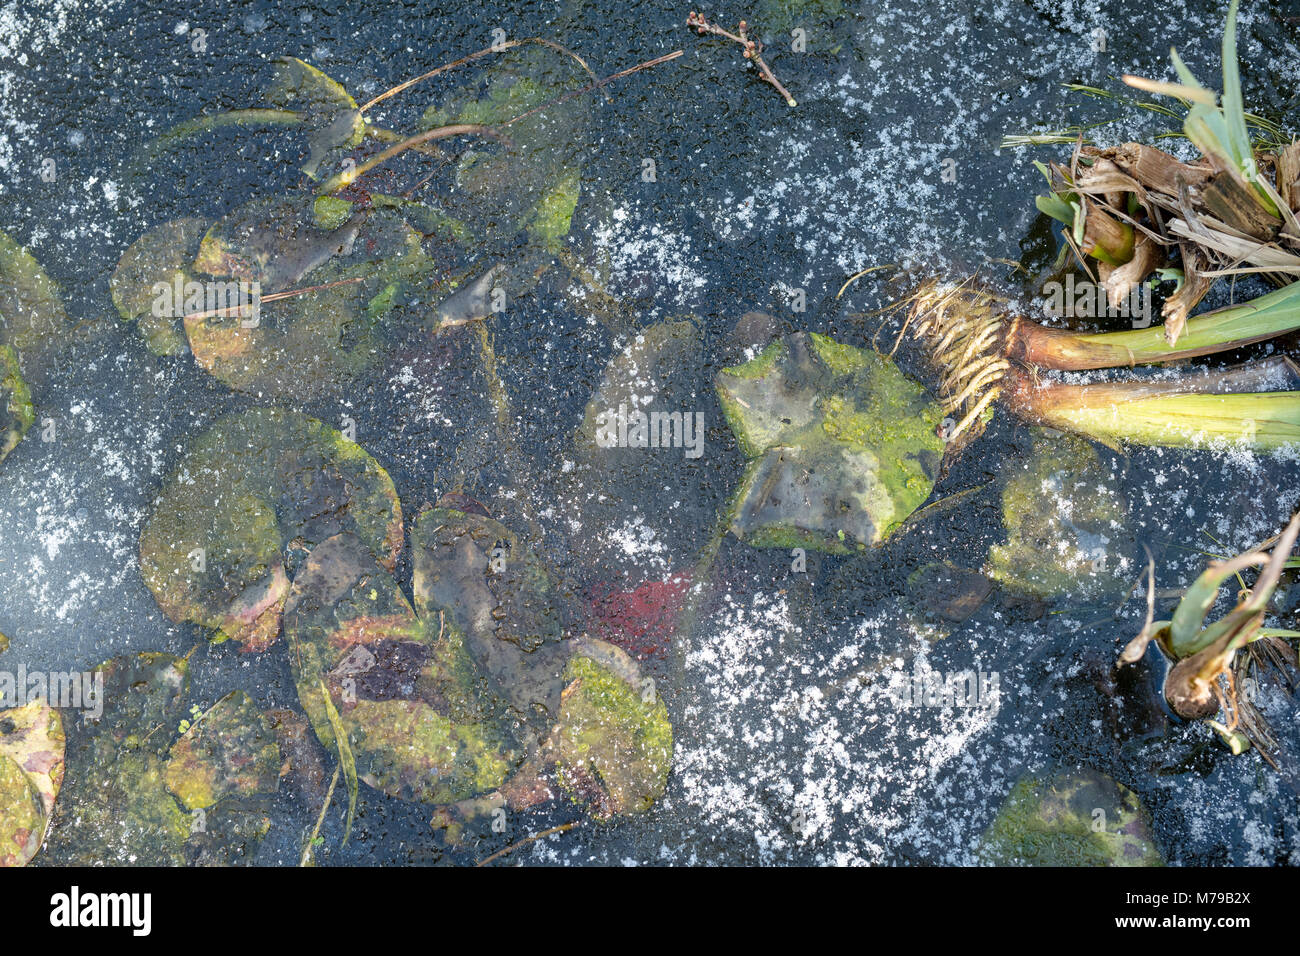 Congelati del laghetto in giardino d'inverno. Acqua congelata e ninfee abstract dal di sopra. Regno Unito Foto Stock